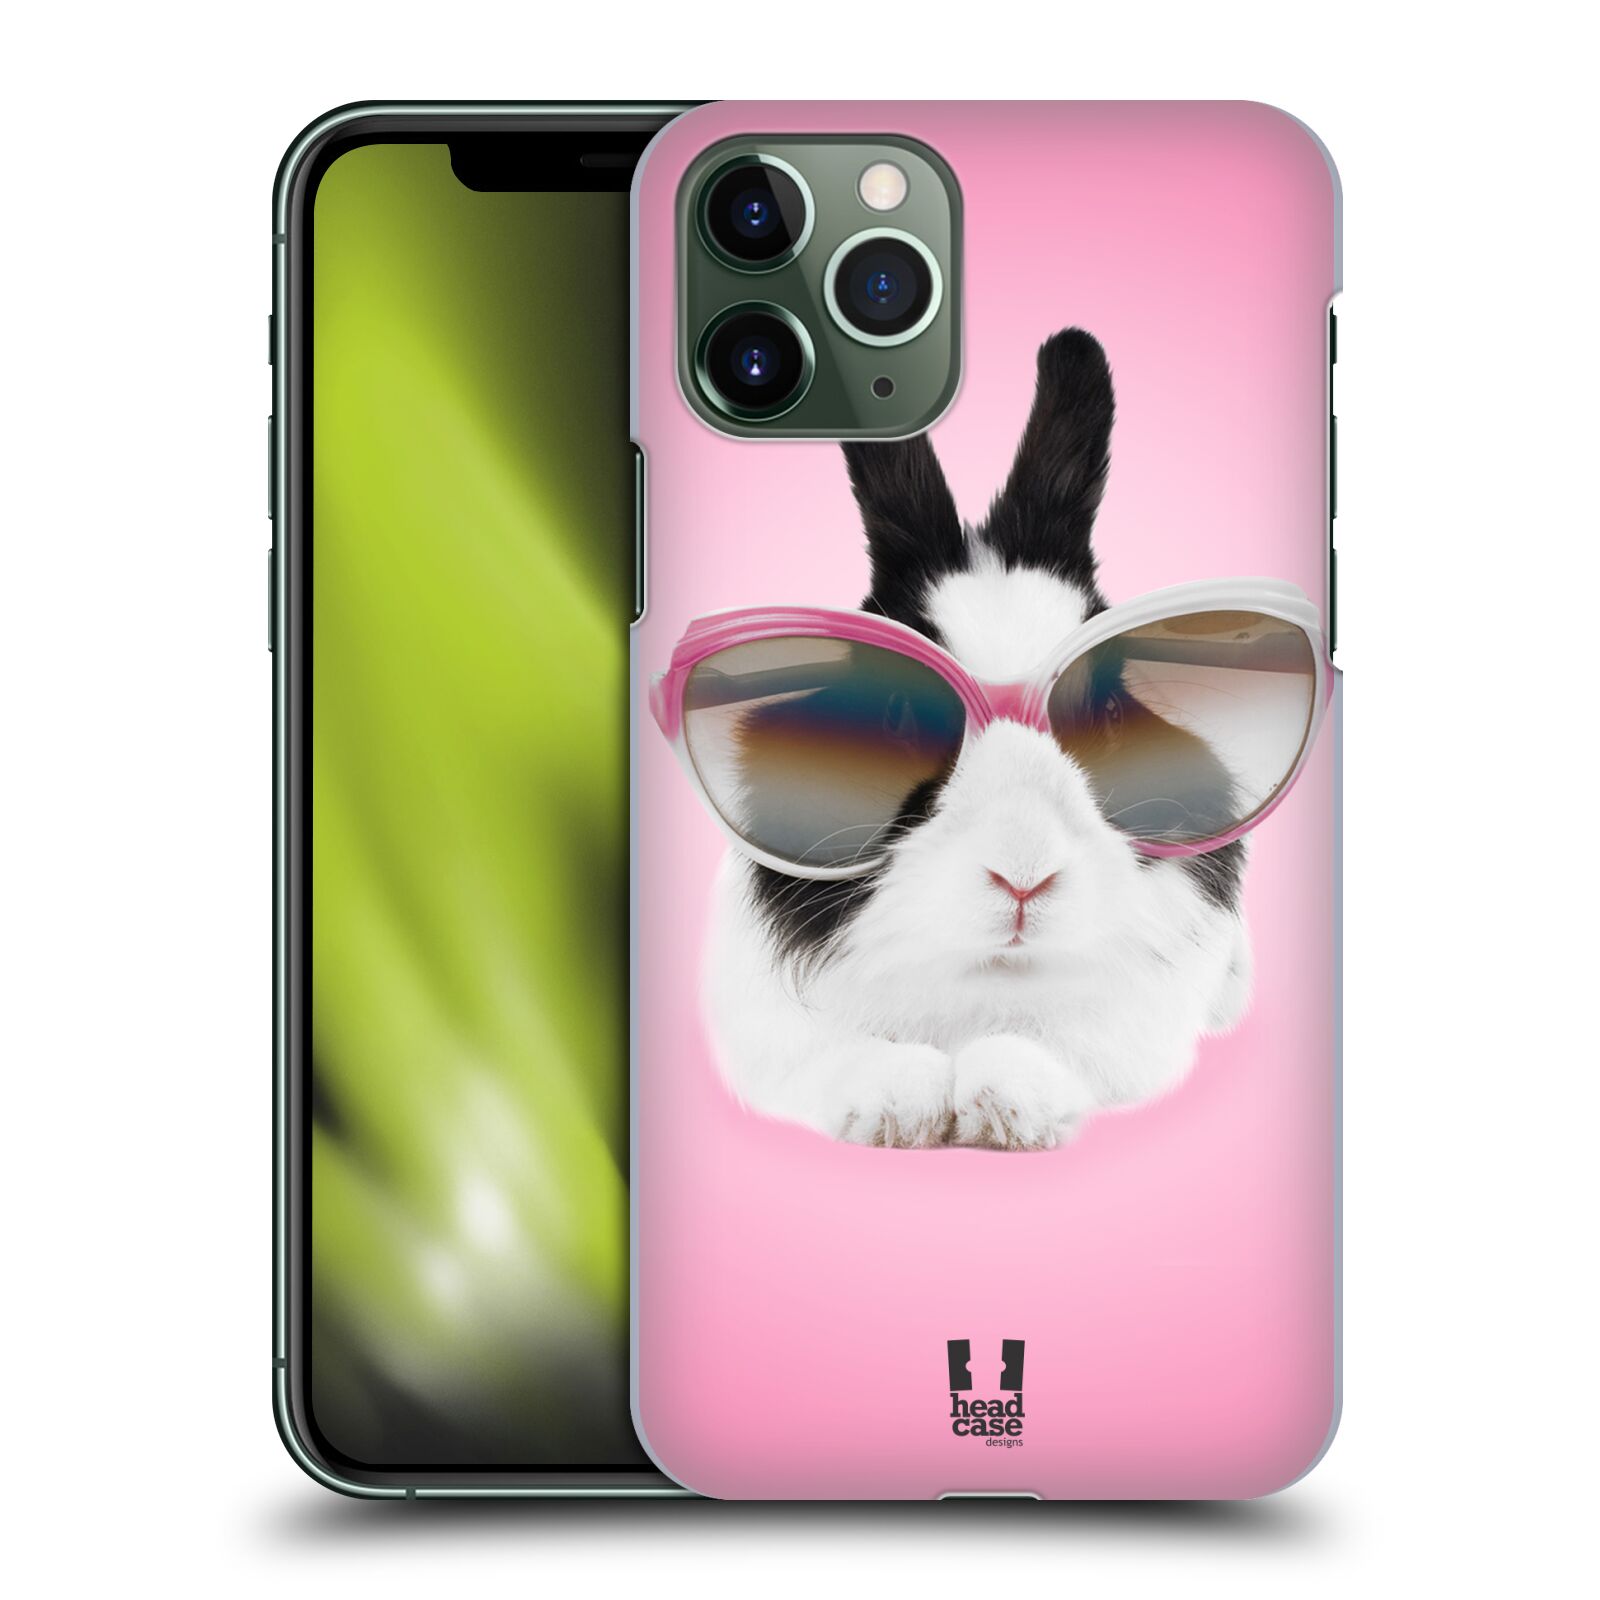 Pouzdro na mobil Apple Iphone 11 PRO - HEAD CASE - vzor Legrační zvířátka roztomilý králíček s brýlemi růžová